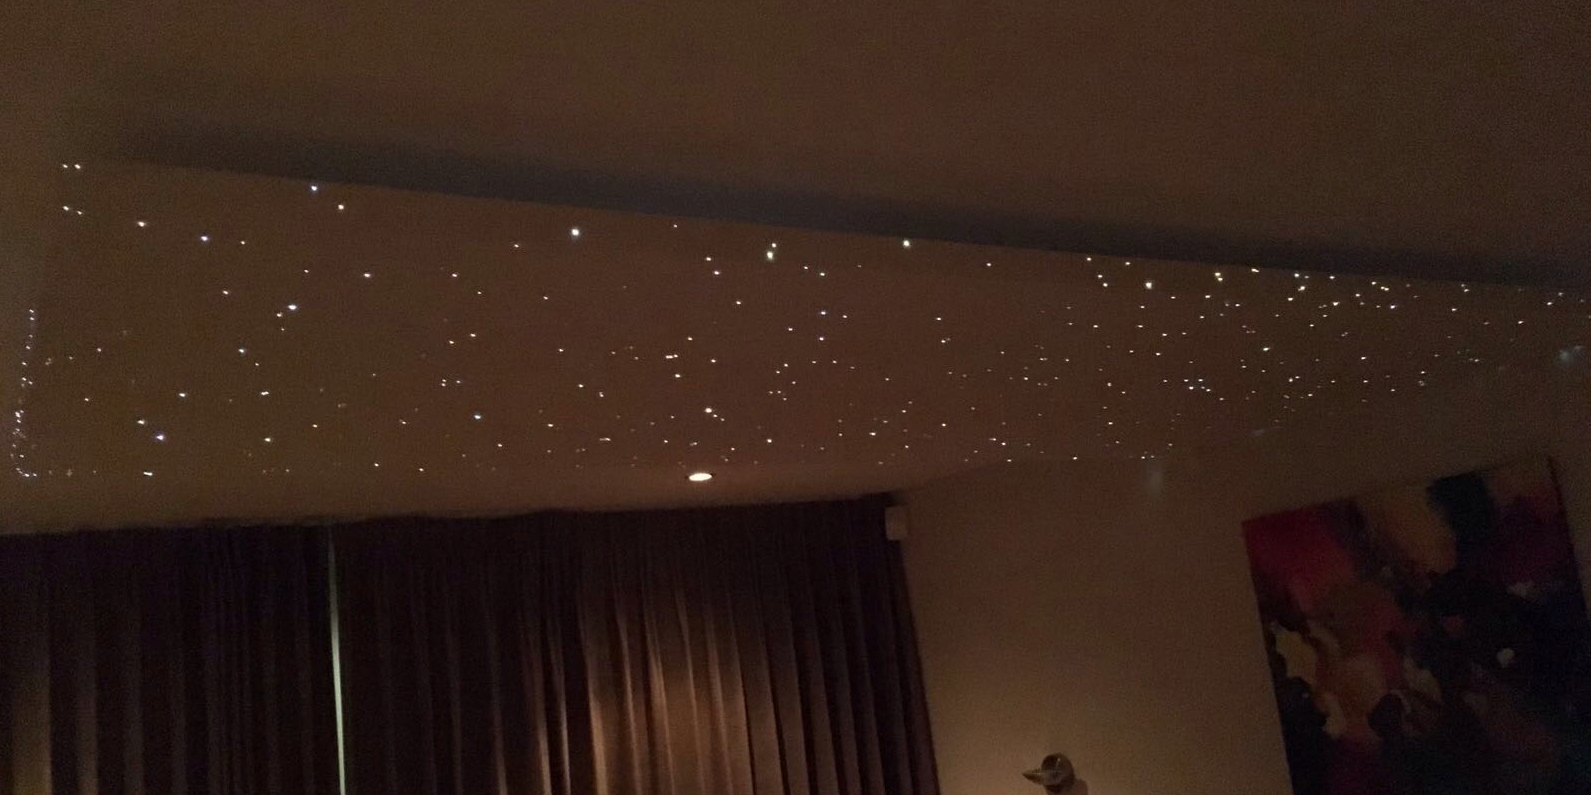 sterrenhemel plafond verlichting slaapkamer zwevend akoestisch eurocoustic rockfon verlaagd romantisch MyCosmos